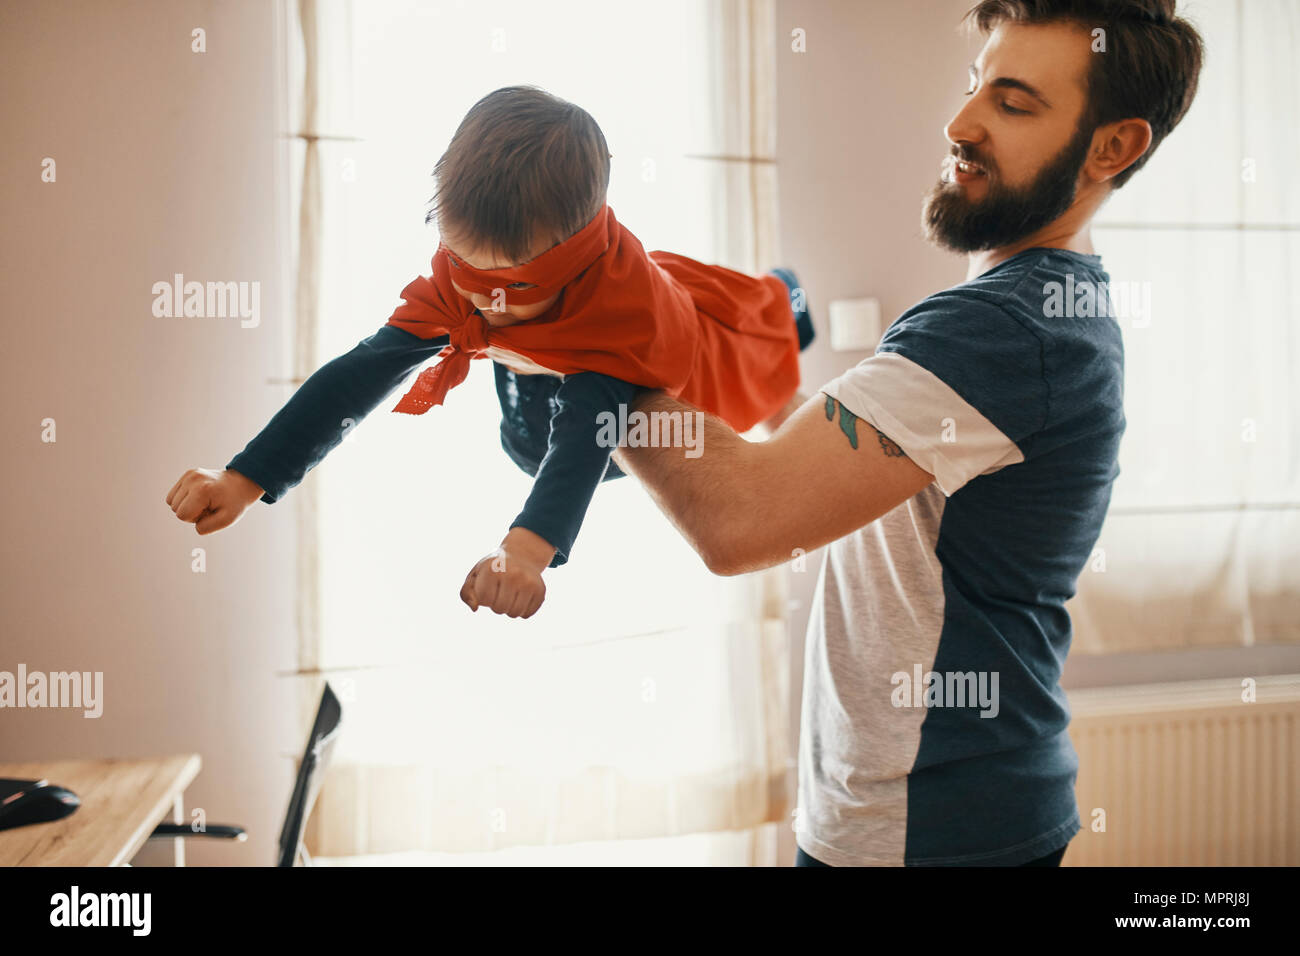 Vater mit seinem kleinen Sohn als Superheld gekleidet Stockfoto